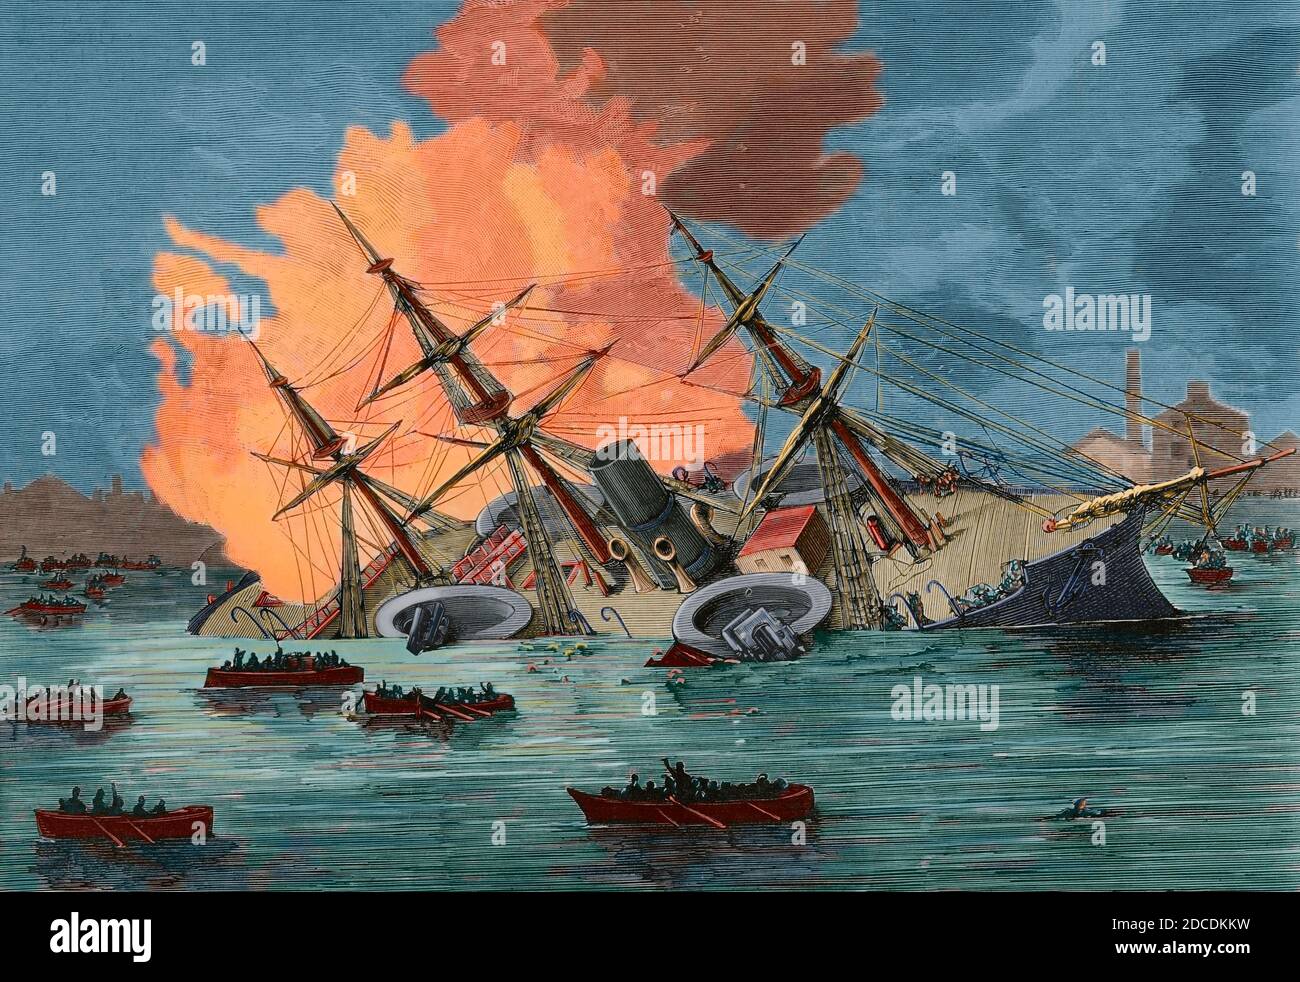 Frankreich, Toulon. Feuer des Kriegsschiffes 'Richelieu'. Szene, die den Untergang des Schiffes um 4 Uhr am 29. Dezember 1880 darstellt. Gravur. La Ilustracion Española y Americana, 1881. Spätere Färbung. Stockfoto